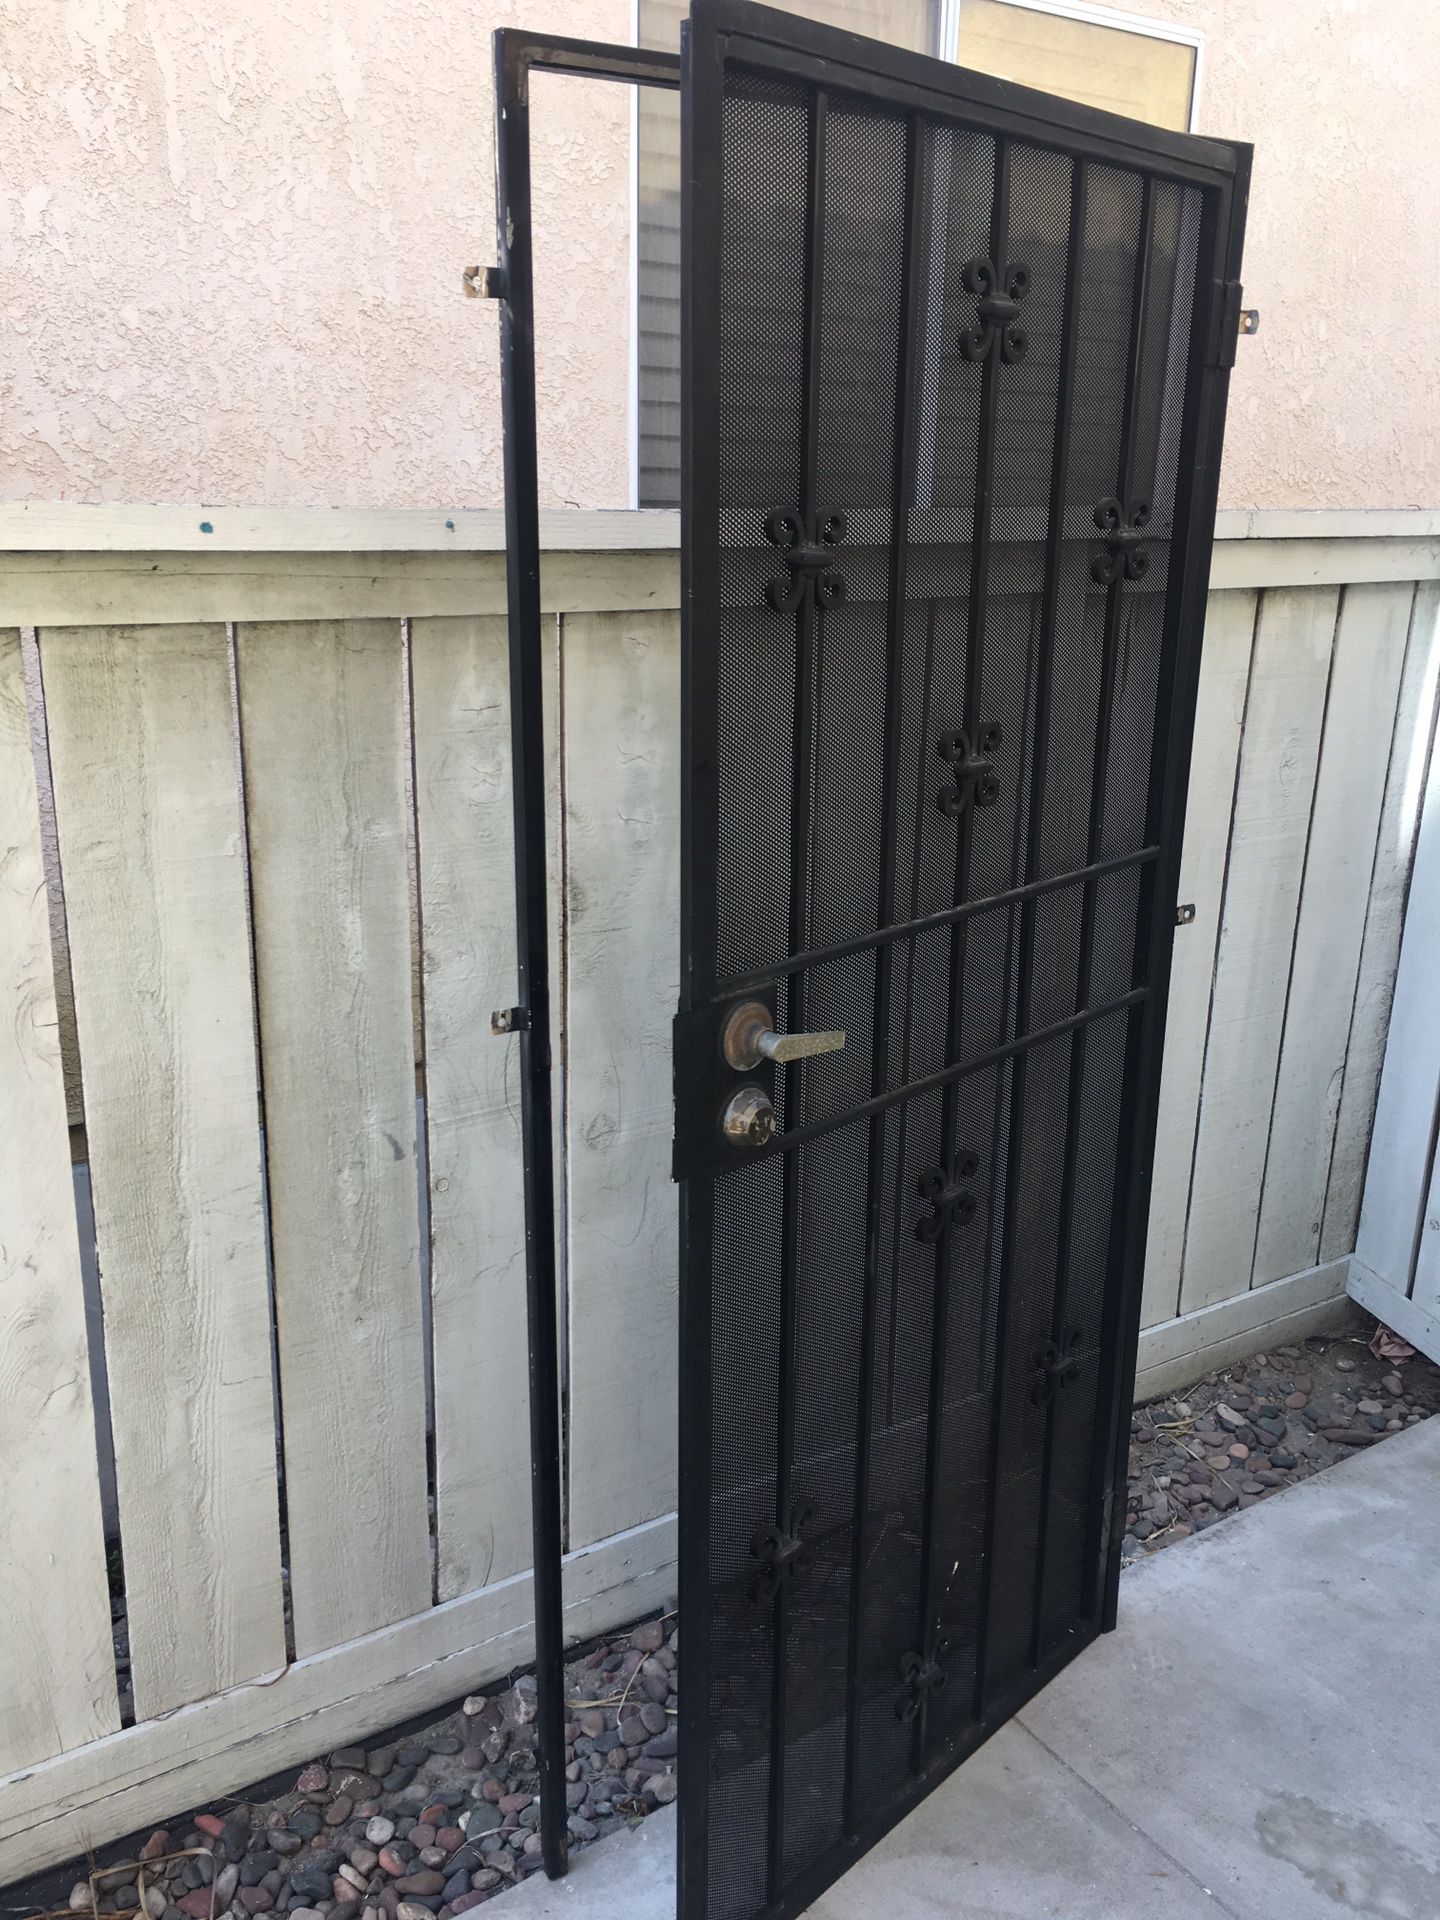 Security door with locks